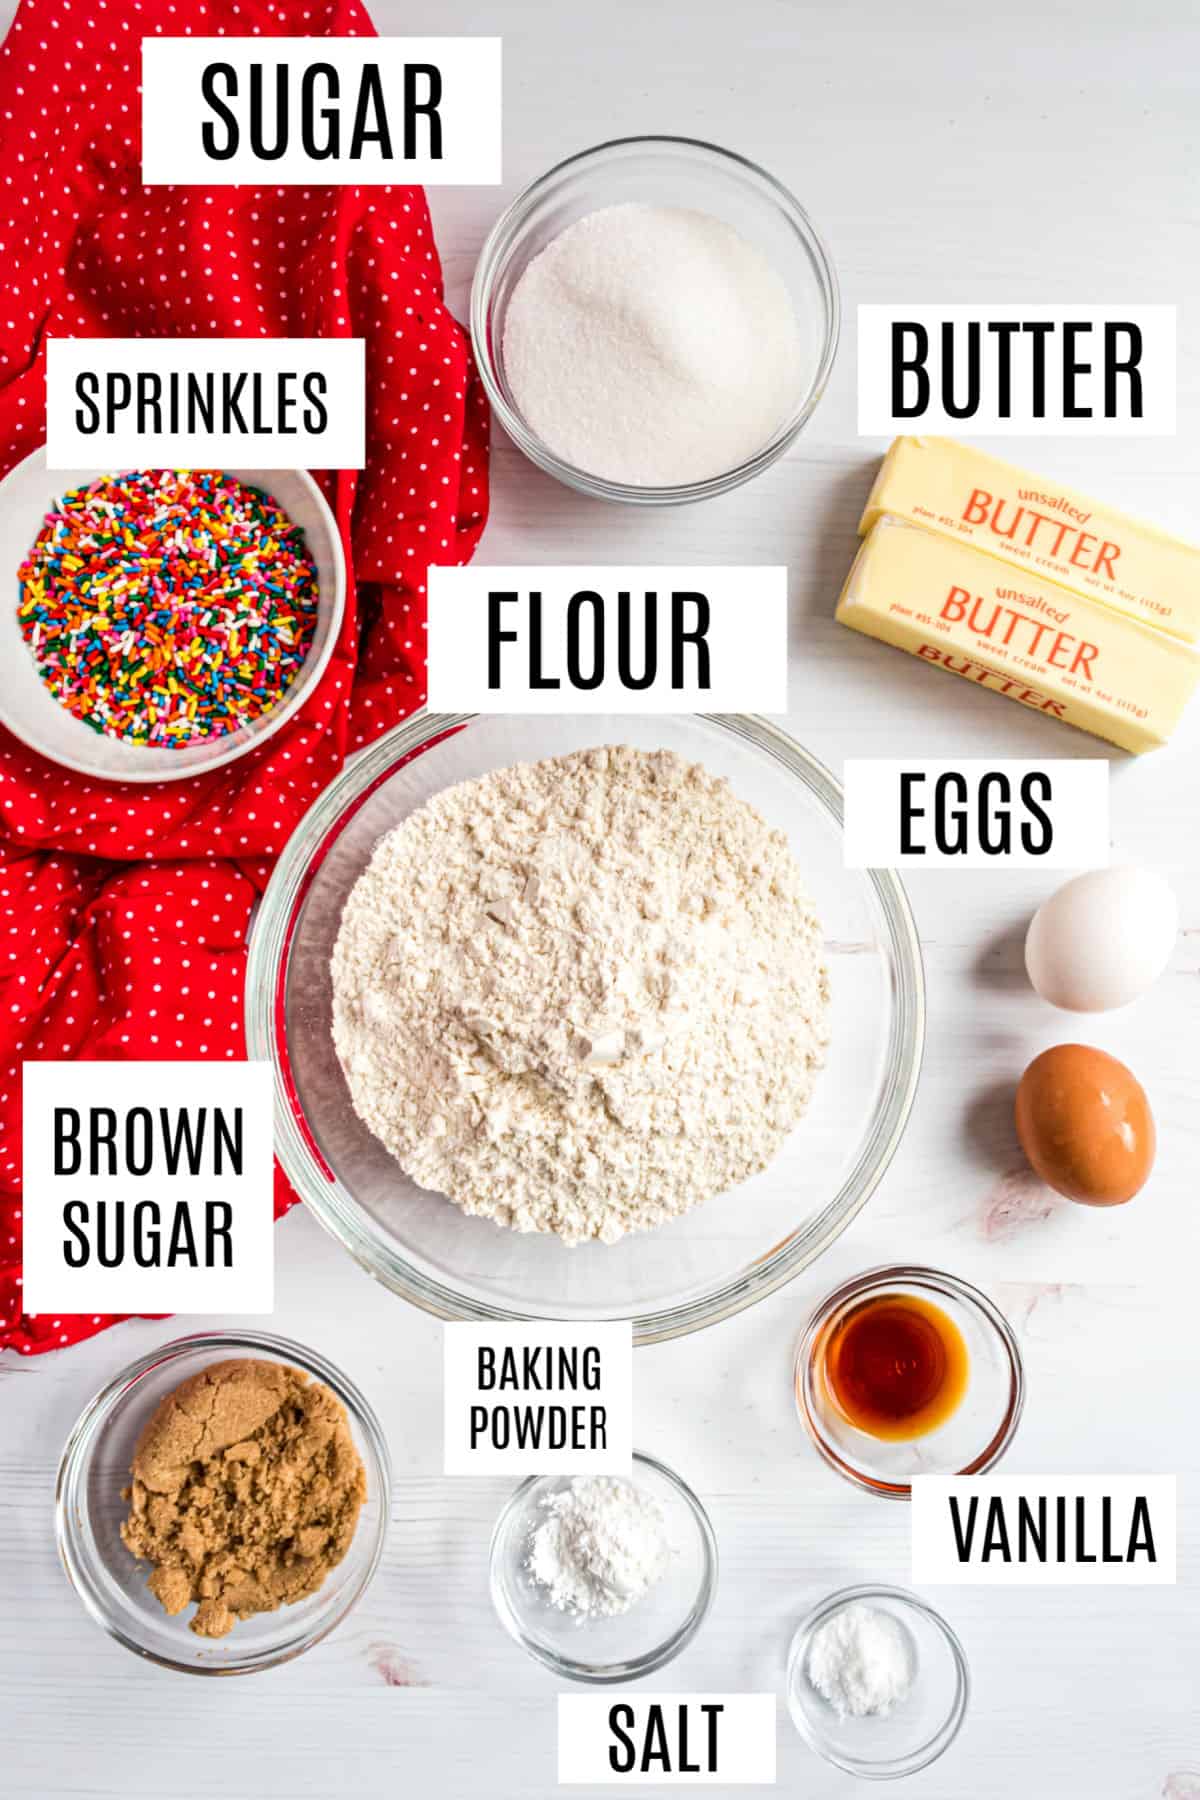 Ingredients needed to make icebox cookies with sprinkles.